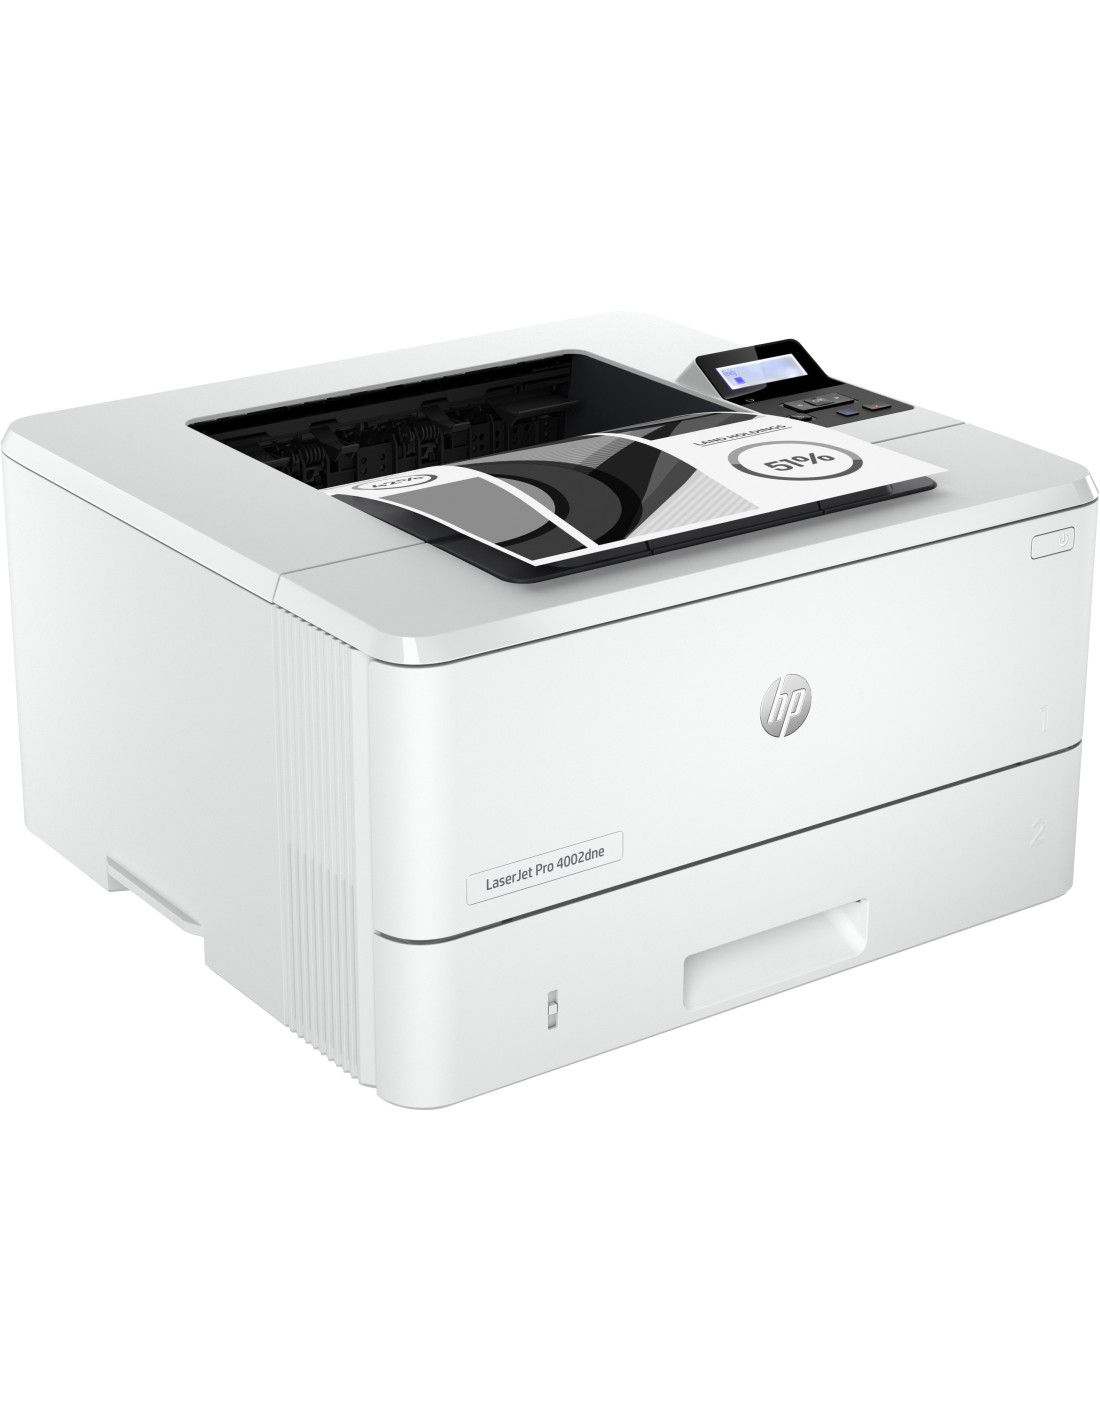 HP 3G629F#B19  HP LaserJet Impresora multifunción Pro 3102fdn, Blanco y  negro, Impresora para Pequeñas y medianas empresas, Imprima, copie, escanee  y envíe por fax, Alimentador automático de documentos; Impresión a doble